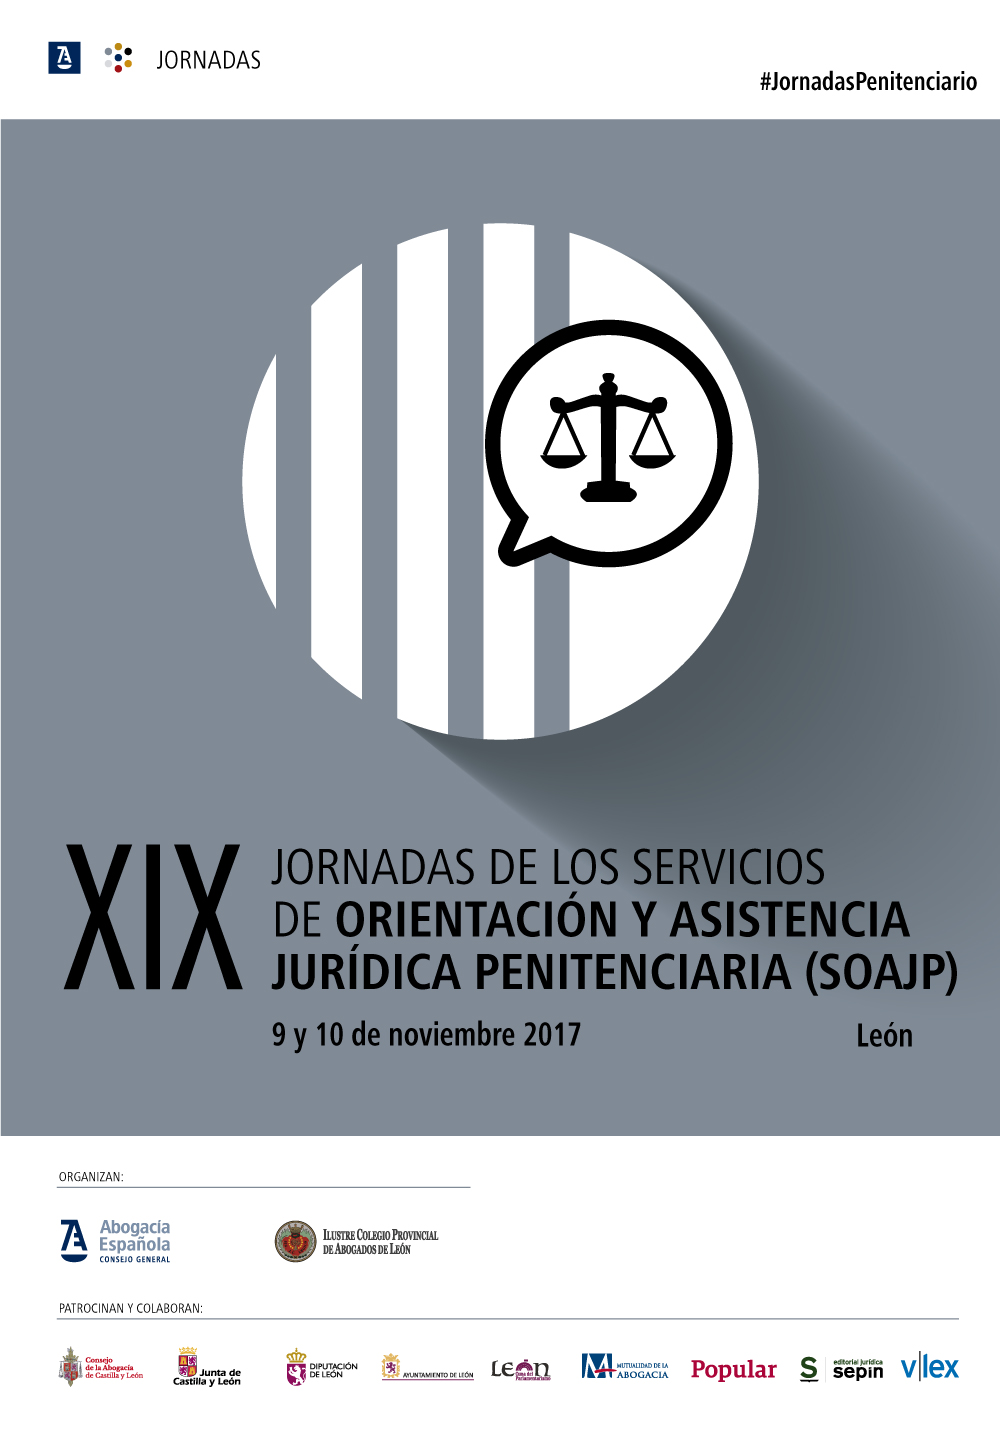 XIX Jornadas de los Servicios de Orientación y Asistencia Jurídica Penitenciaria (SOAJP)